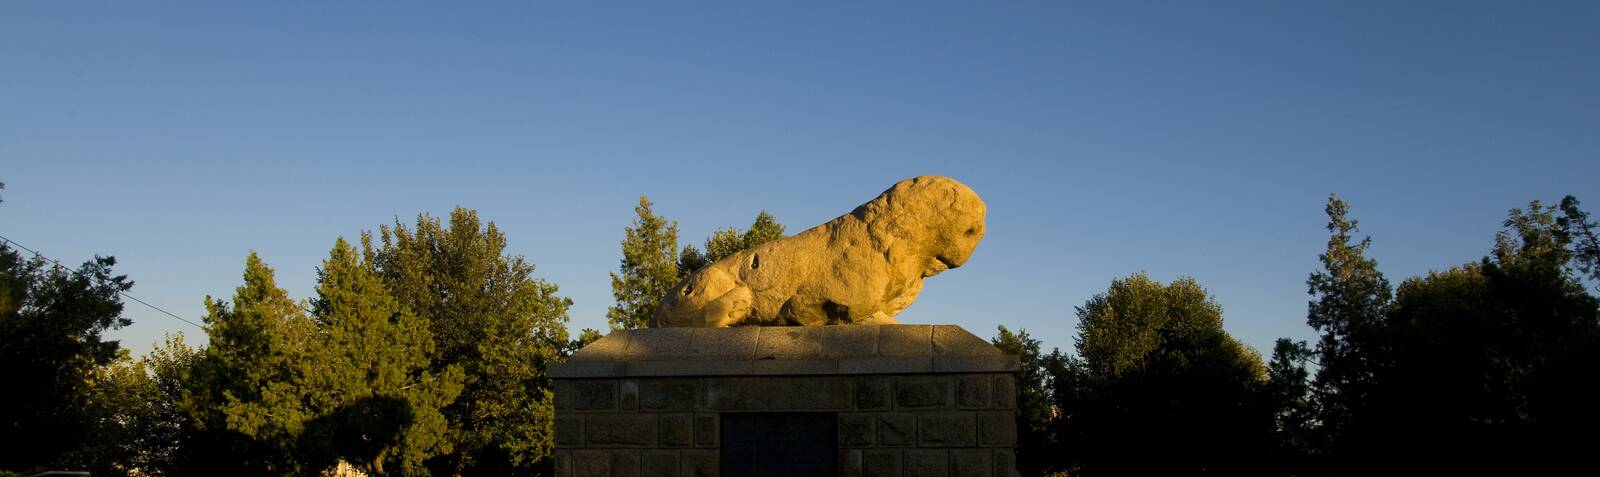 Каменная статуя льва